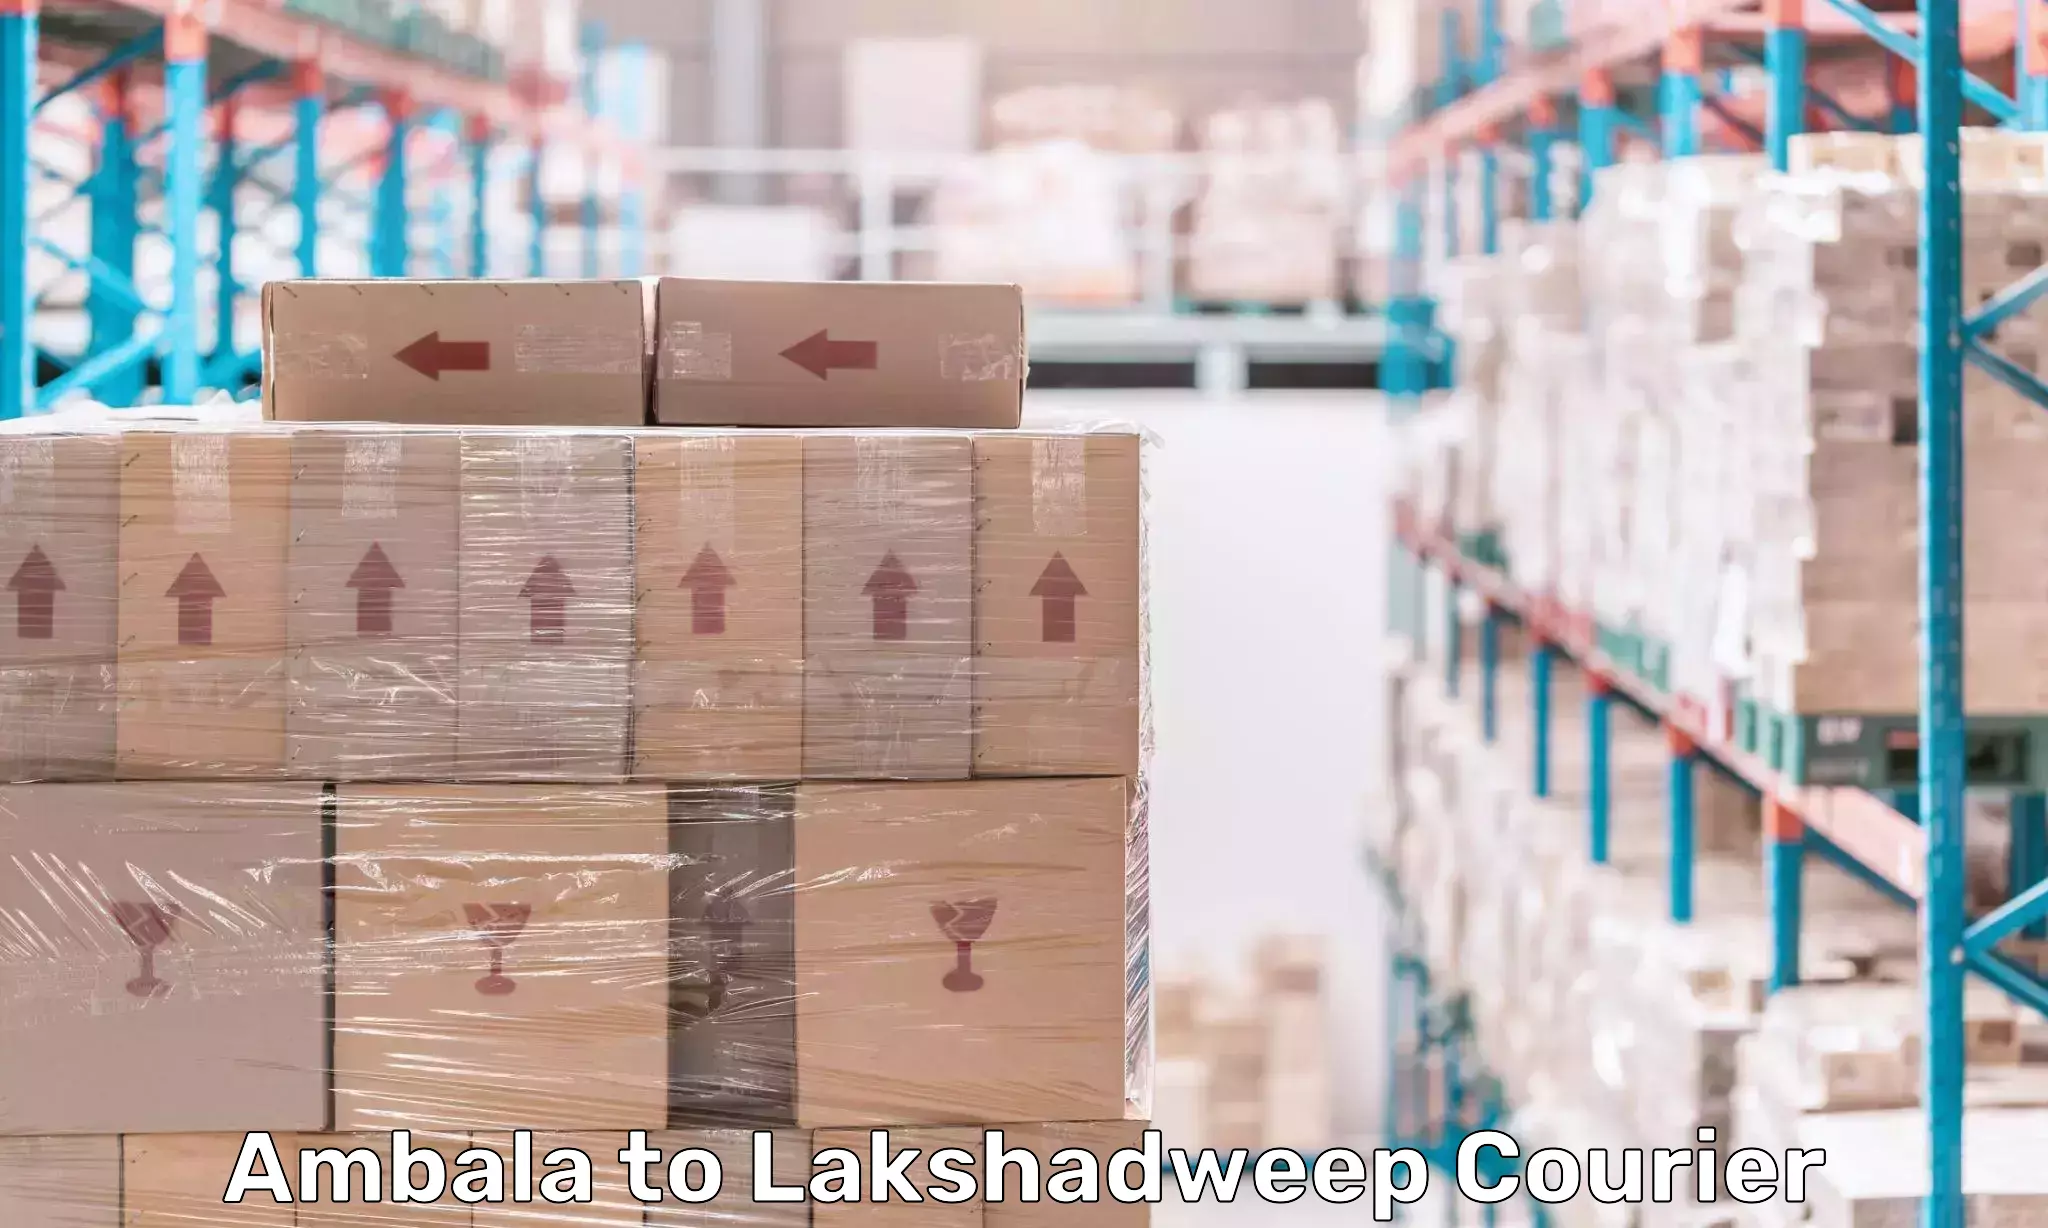 Door-to-door freight service Ambala to Lakshadweep